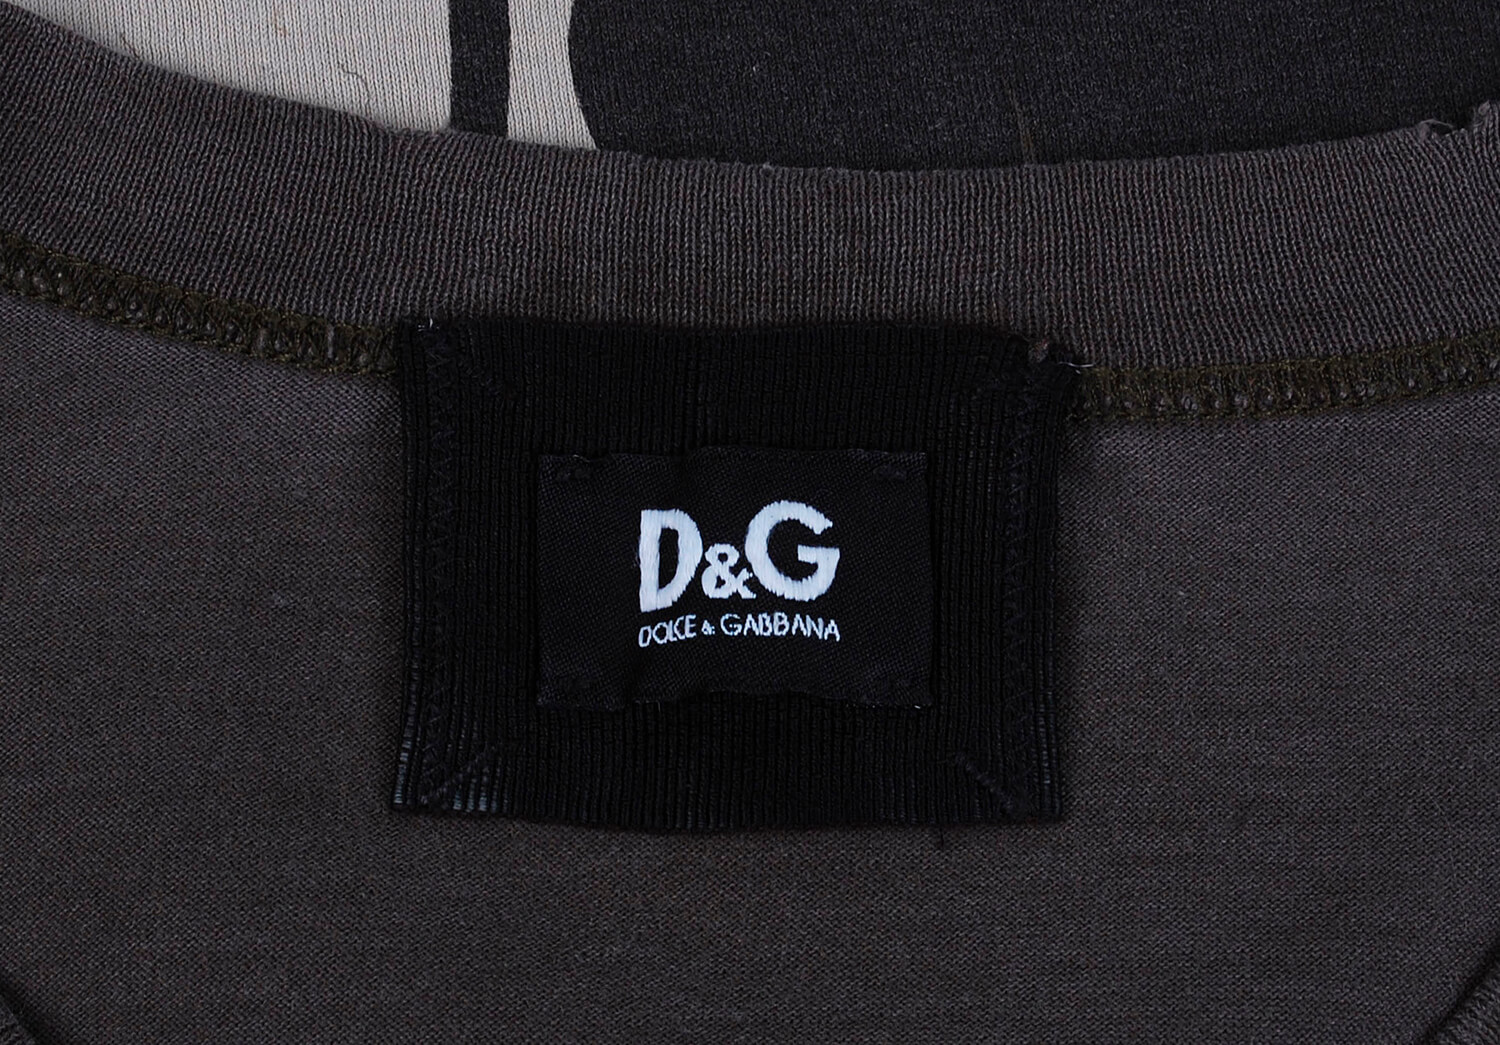 Dolce&Gabbana T-shirt